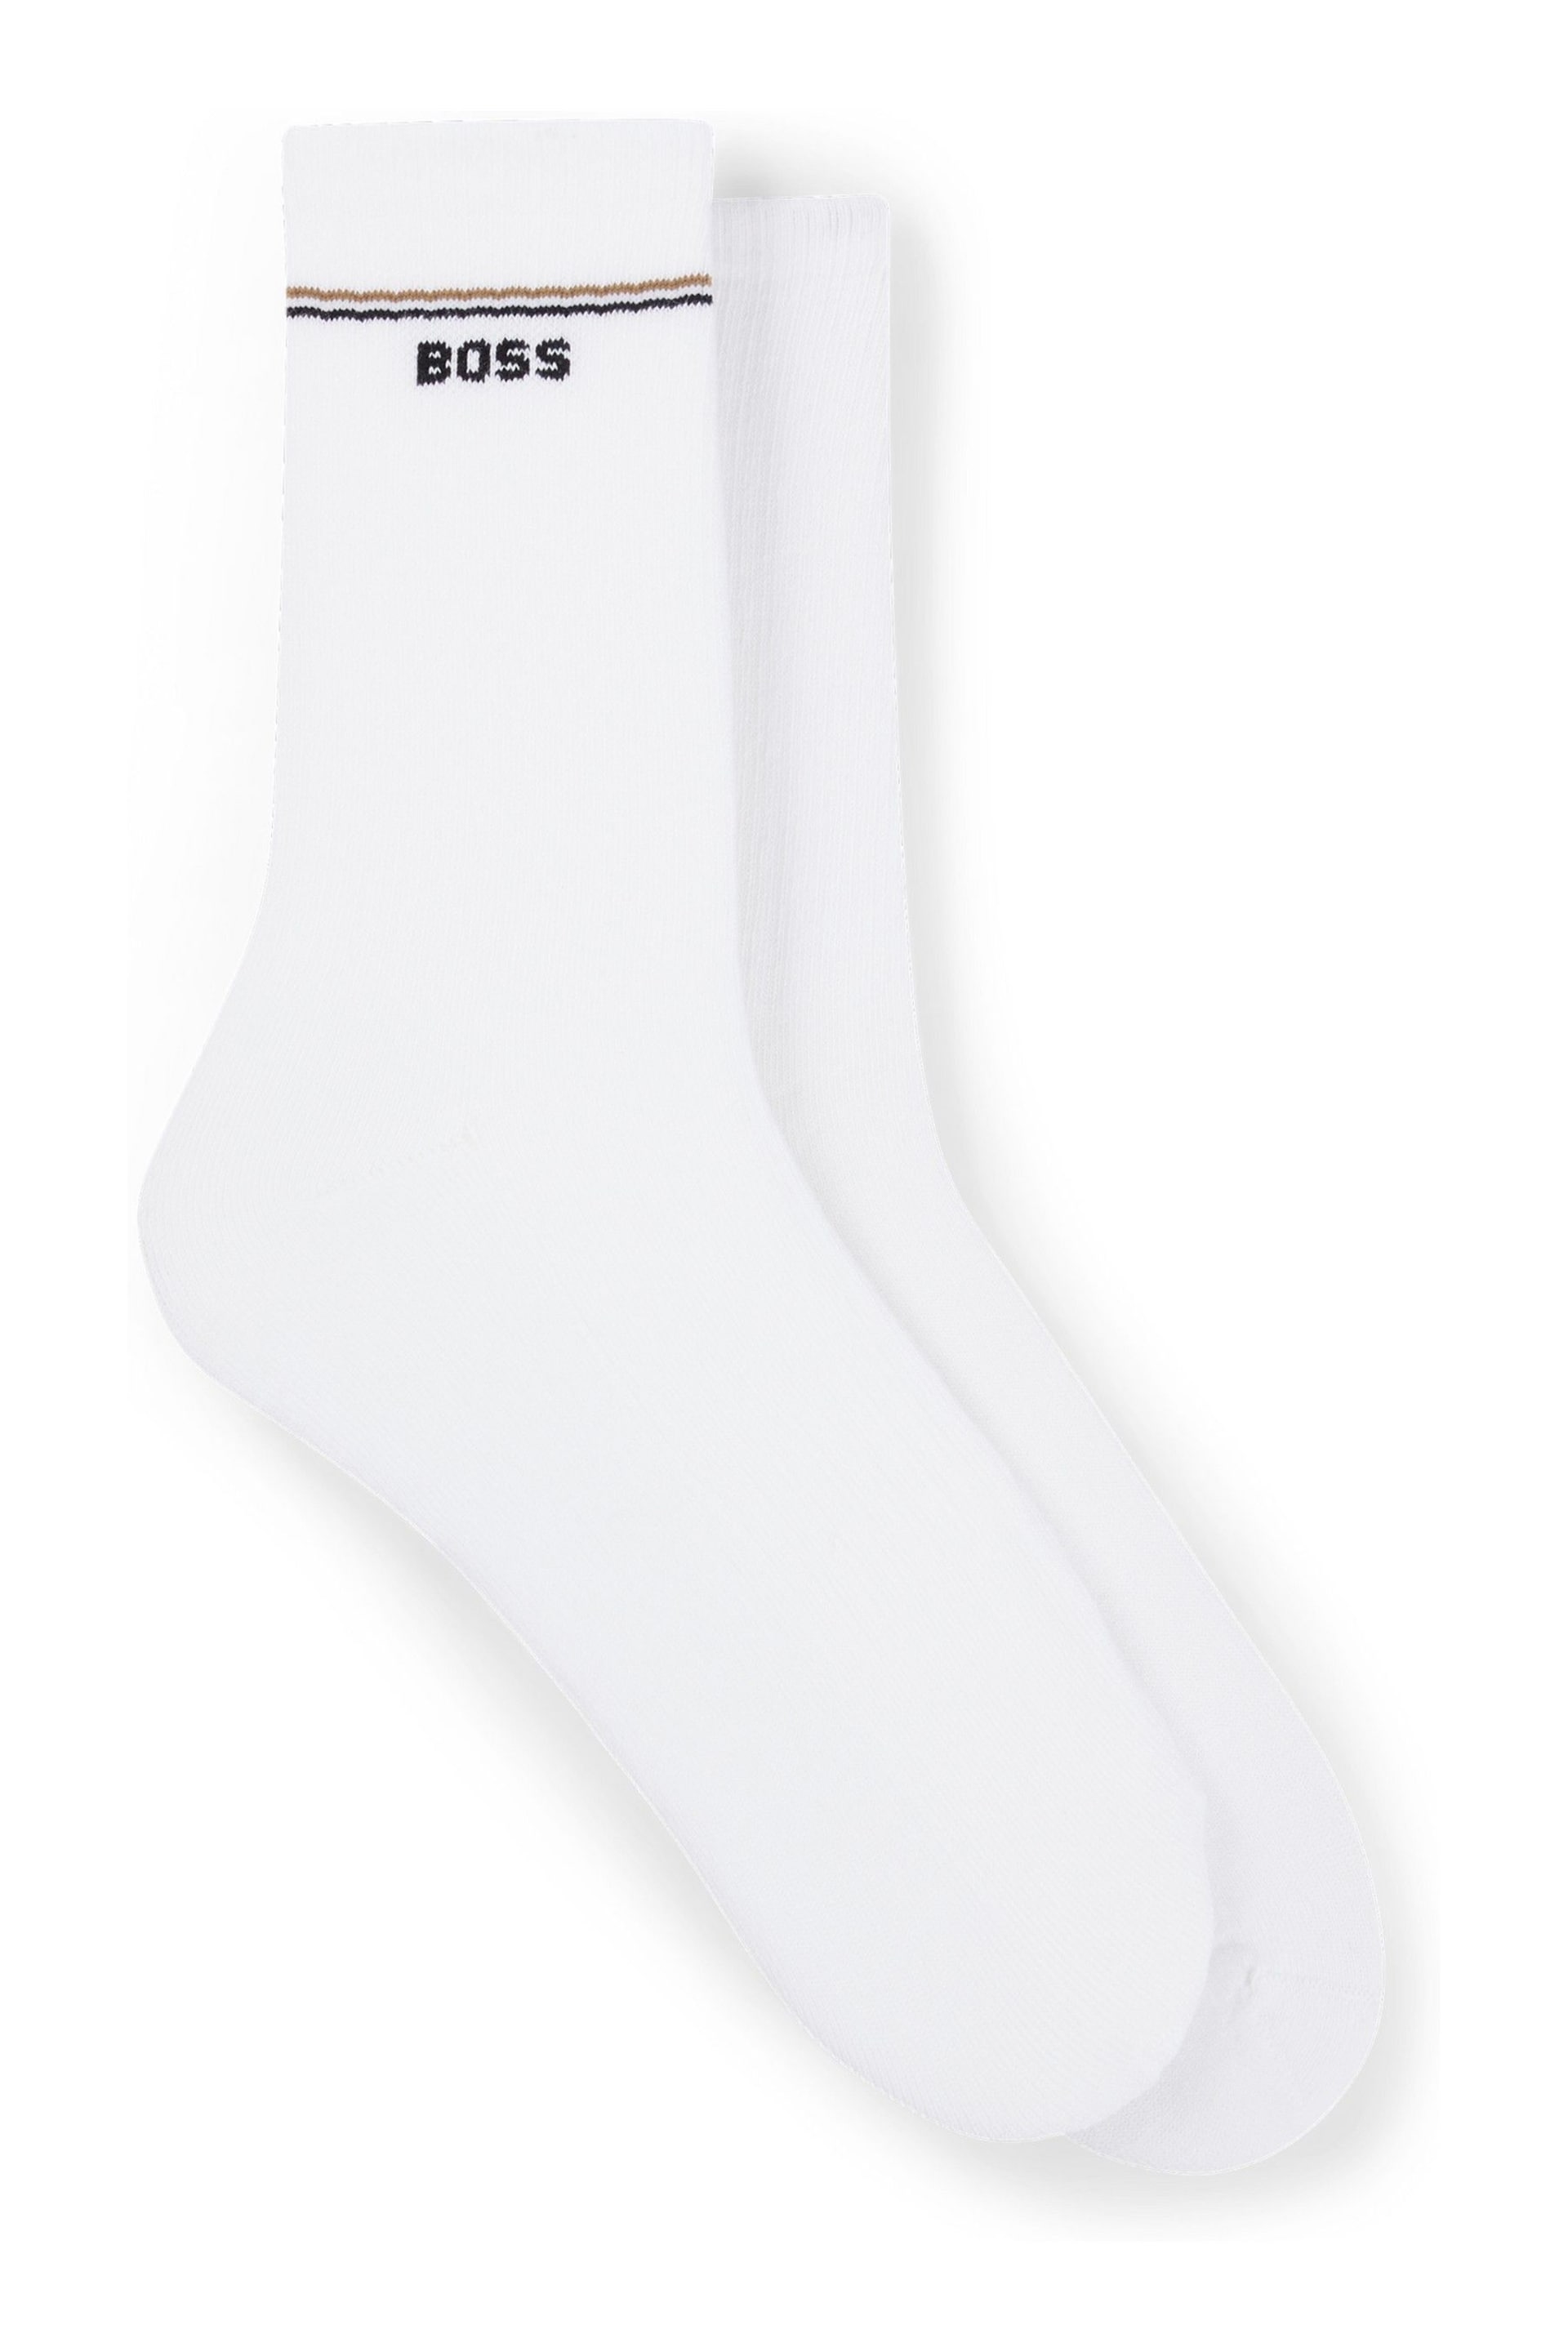 BOSS White Iconic Socks 2 Pack - Image 1 of 3